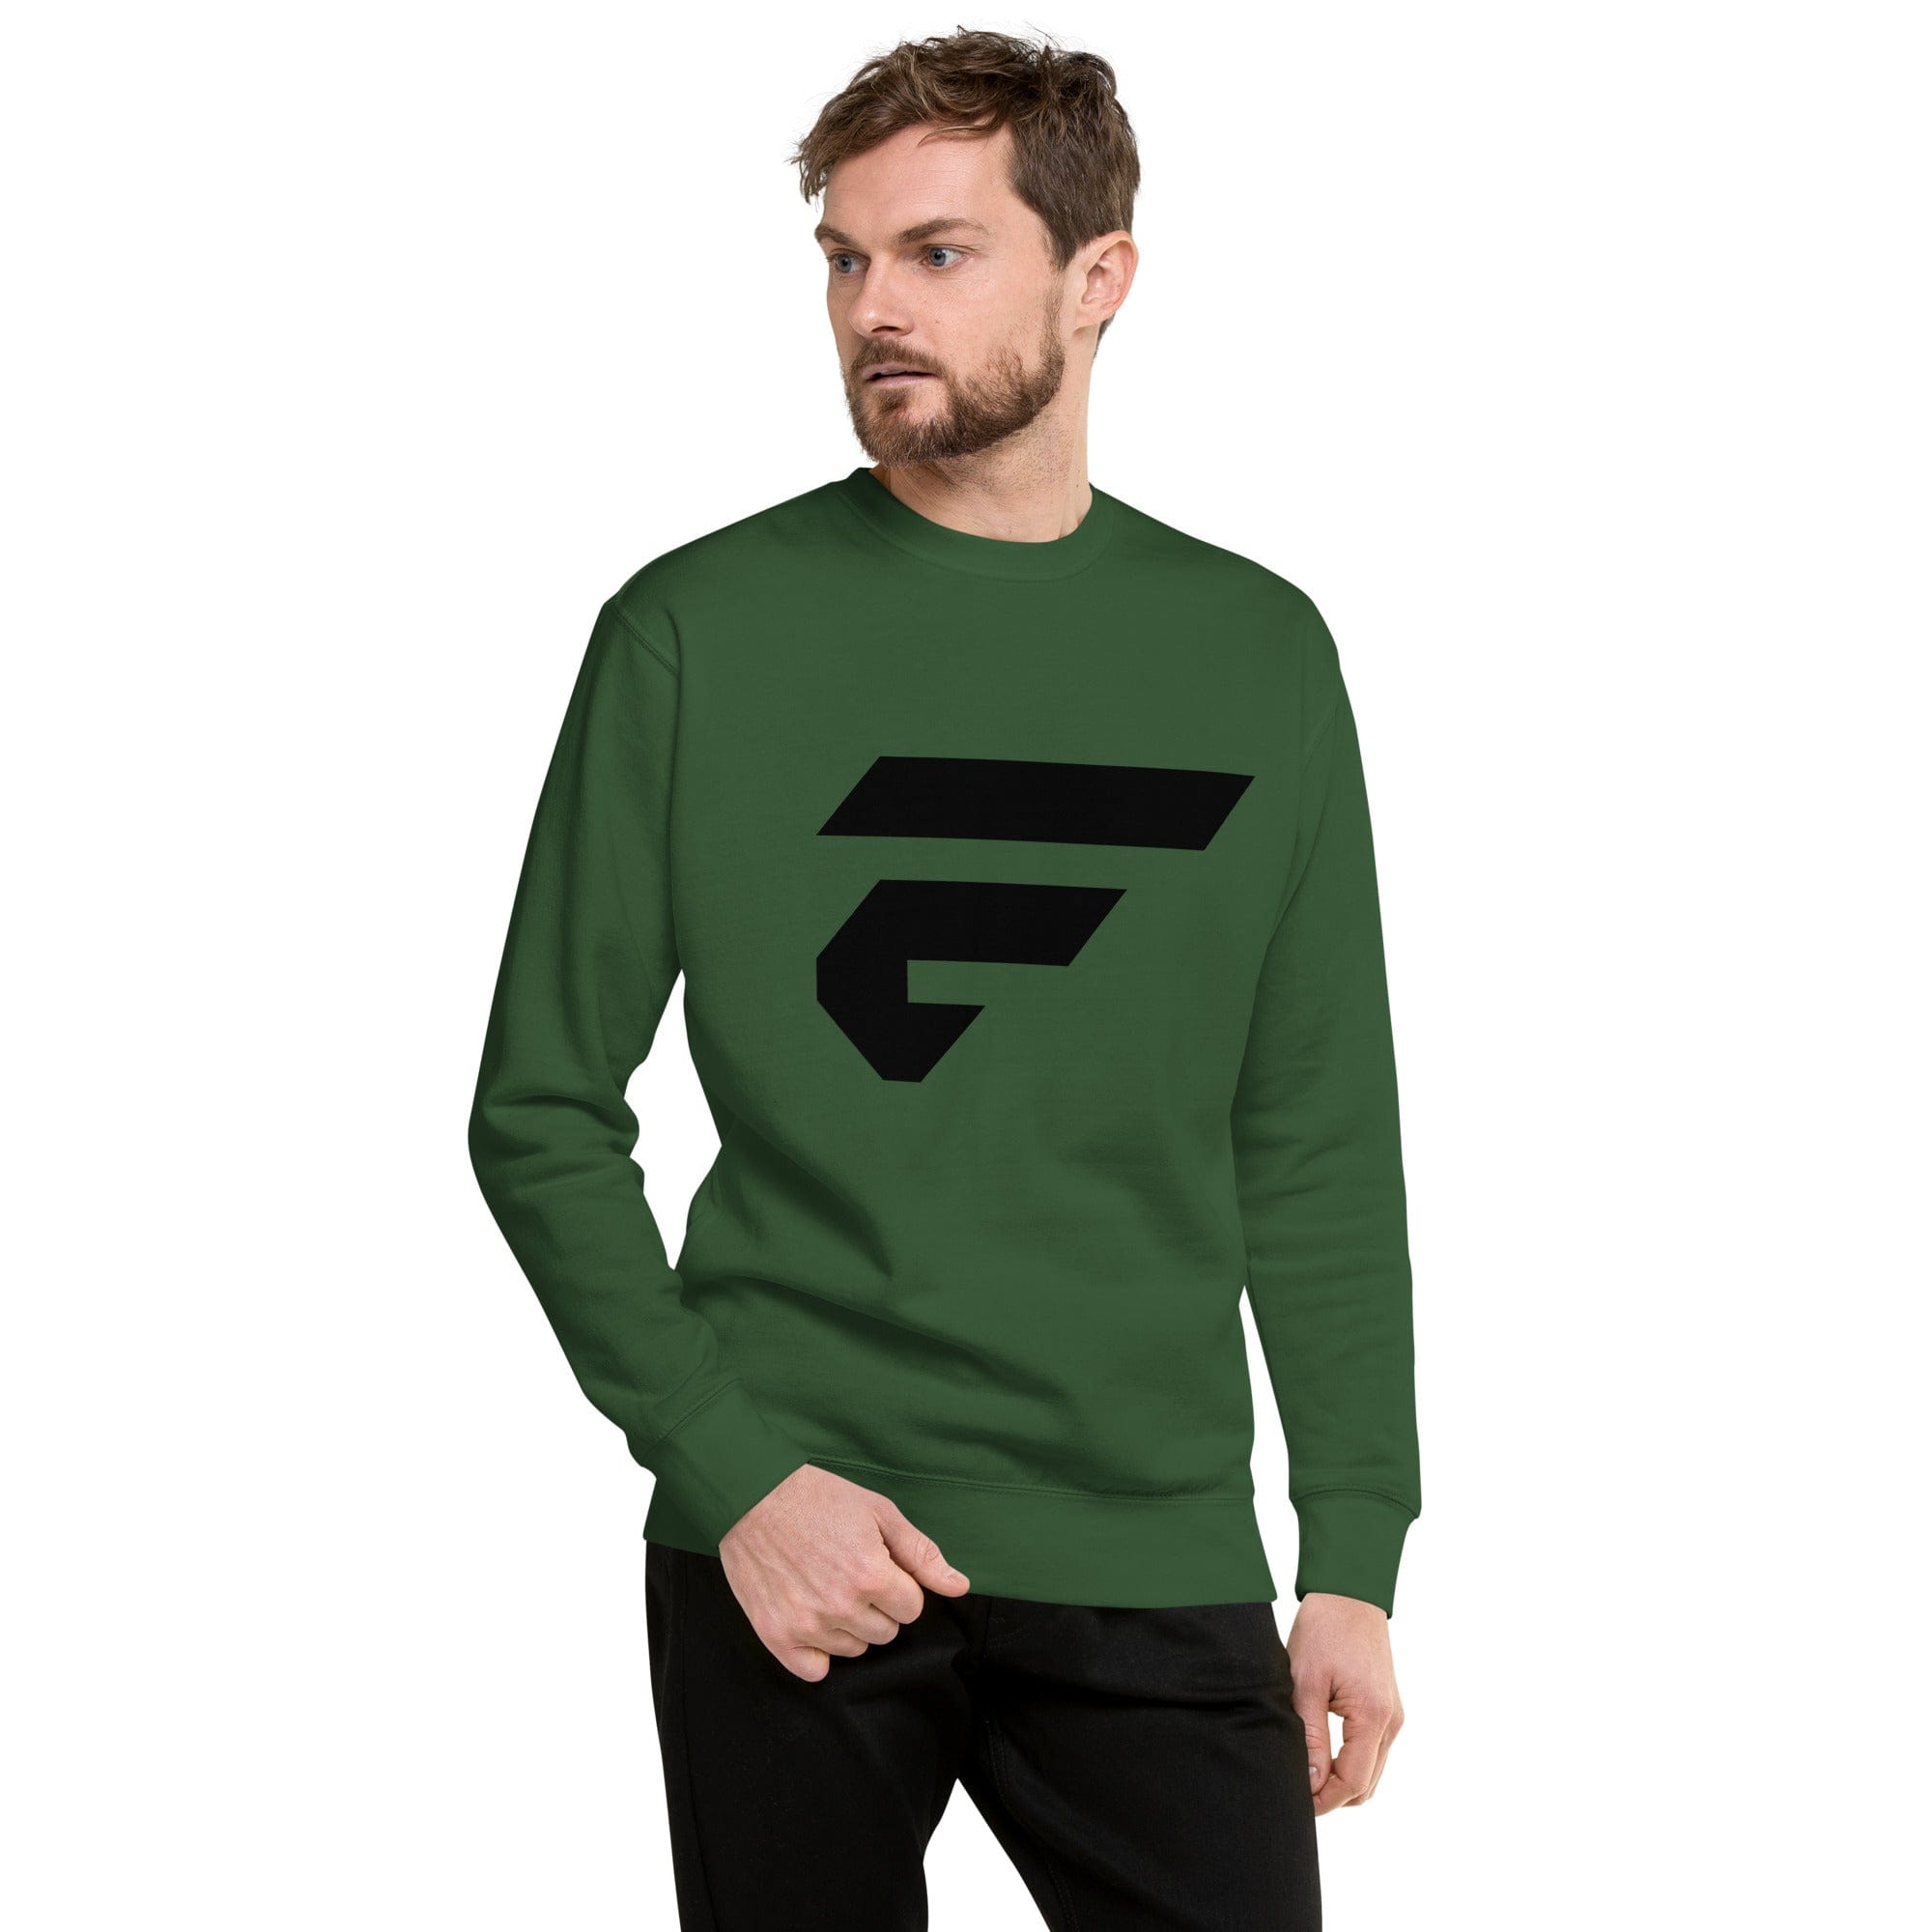 Green unisex sweatshirt with Fire Cornhole F logo in black